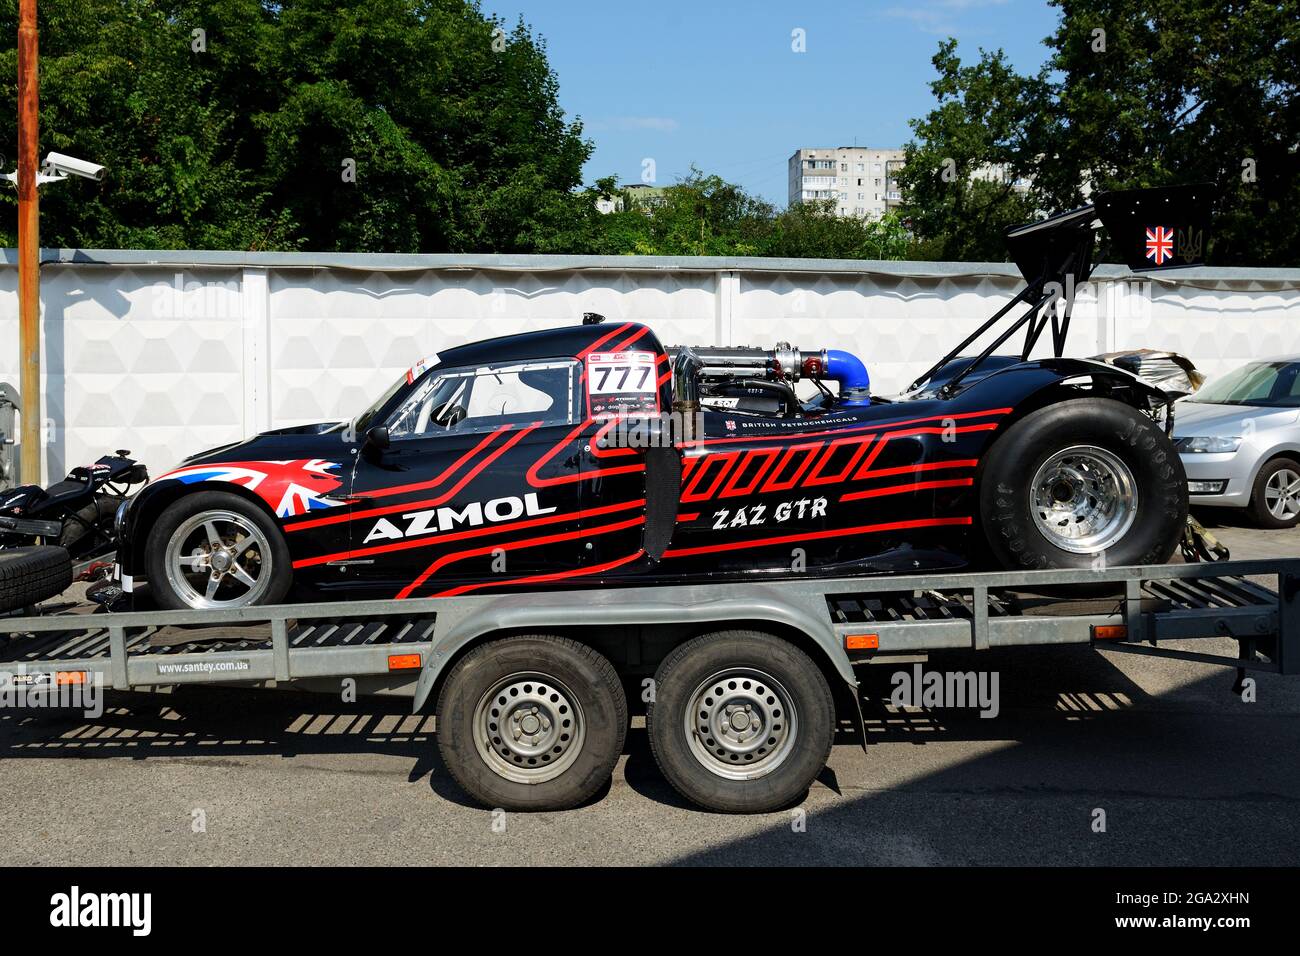 BILA TSERKVA - LUGLIO 25: La ZAZ GTR Drag Racing è sul Professional ucraino Drag Racing Series Show, il 25 luglio 2021 a Bila Tserkva, Ucraina. Foto Stock